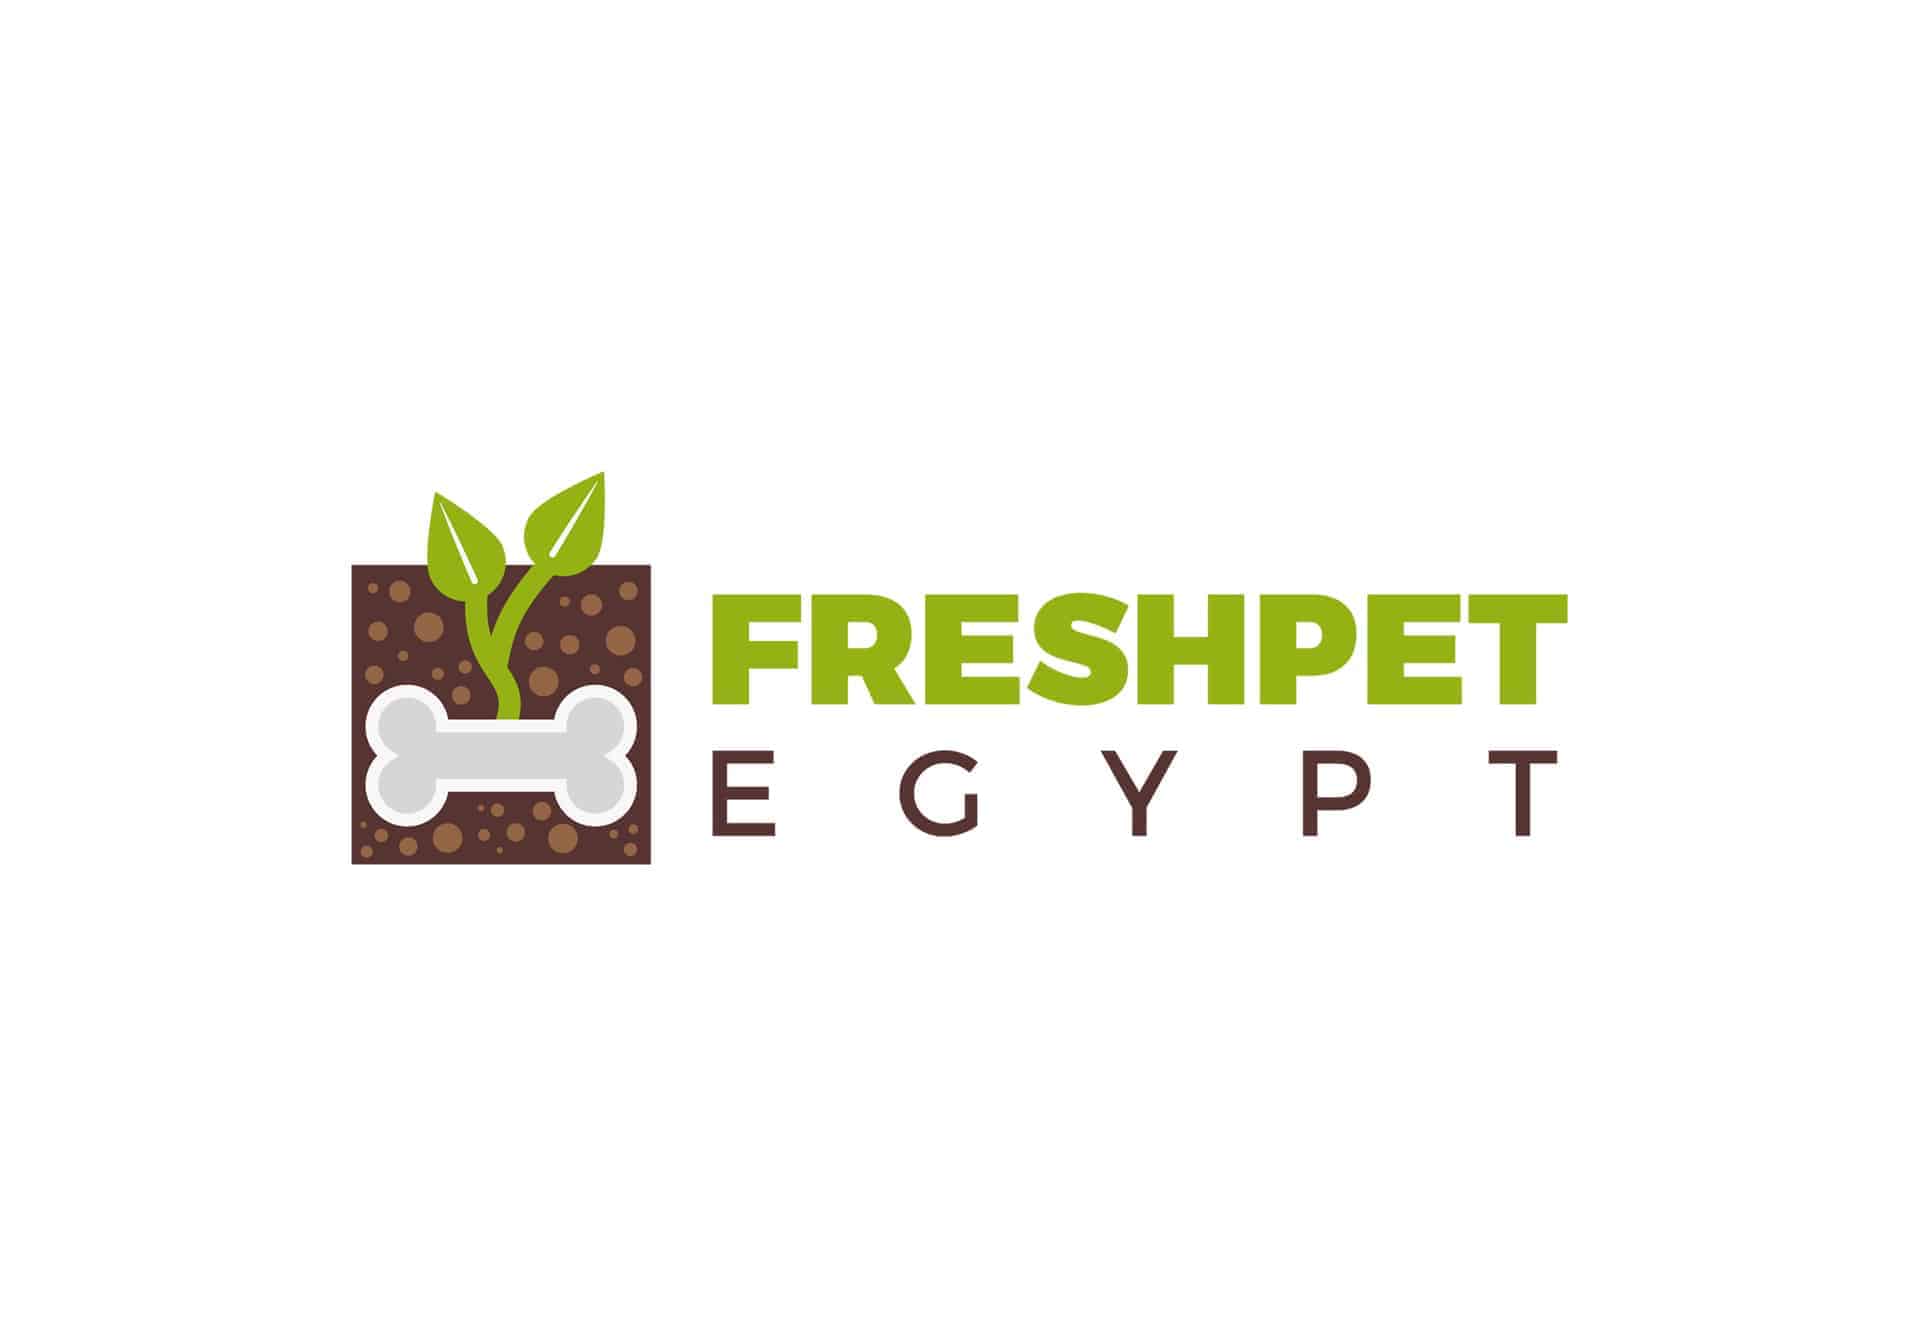 Freshpet Egypt Branding Project